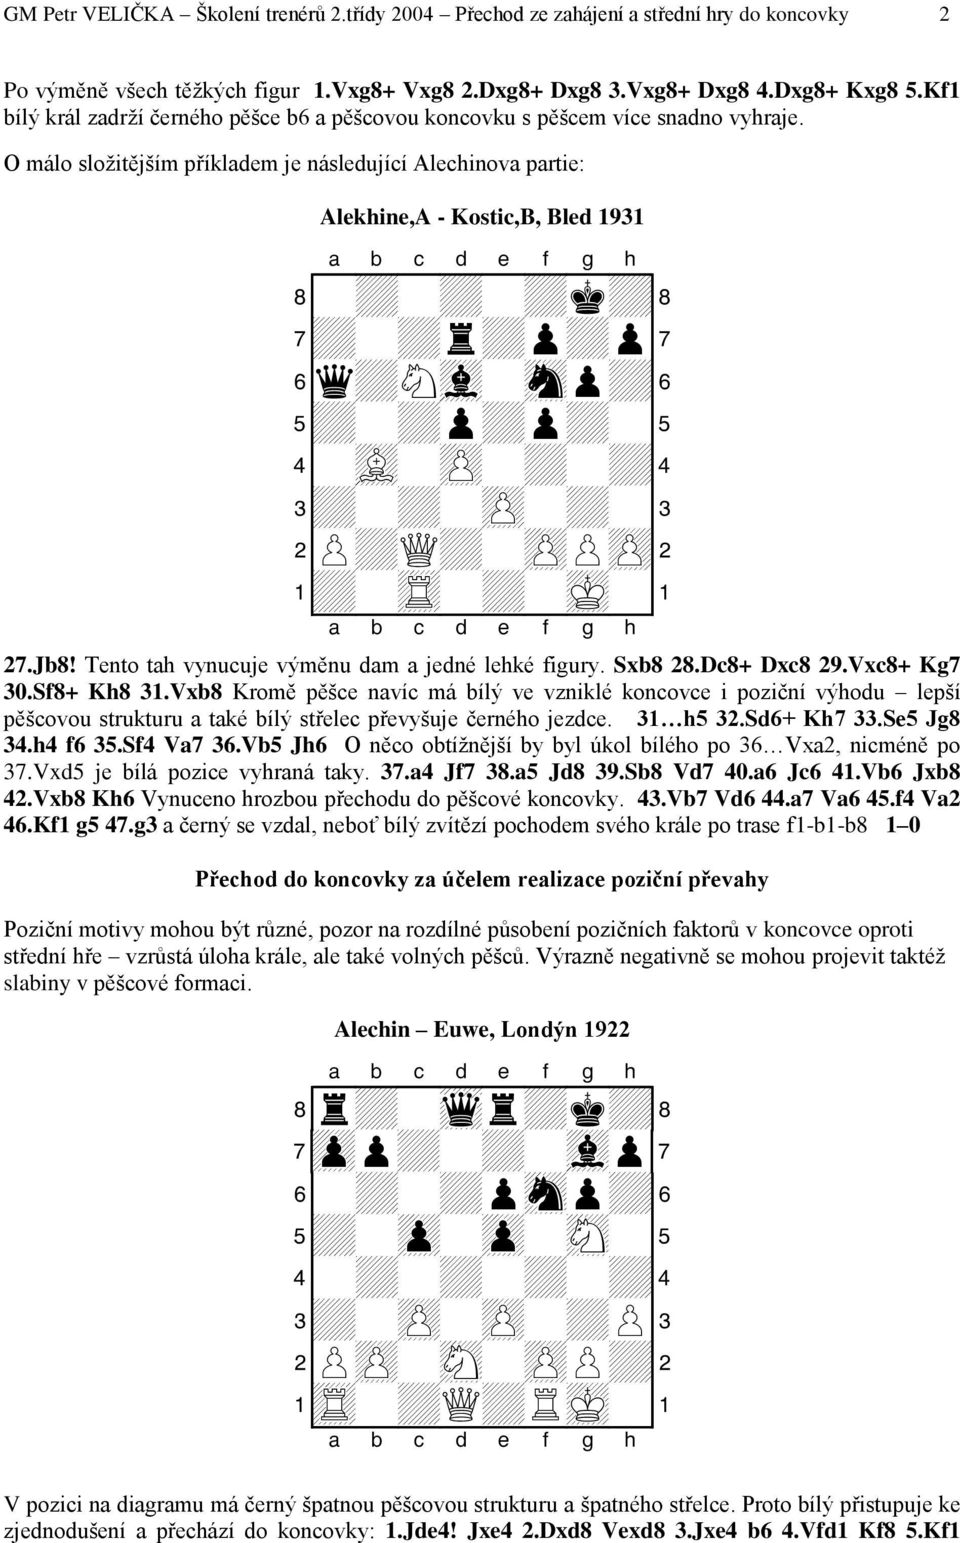 O málo složitějším příkladem je následující Alechinova partie: Alekhine,A - Kostic,B, Bled 1931 8-+-+-+k+( 7+-+r+p+p' 6q+Nvl-snp+& 5+-+p+p+-% 4-vL-zP-+-+$ 3+-+-zP-+-# 2P+Q+-zPPzP" 1+-tR-+-mK-! 27.Jb8!